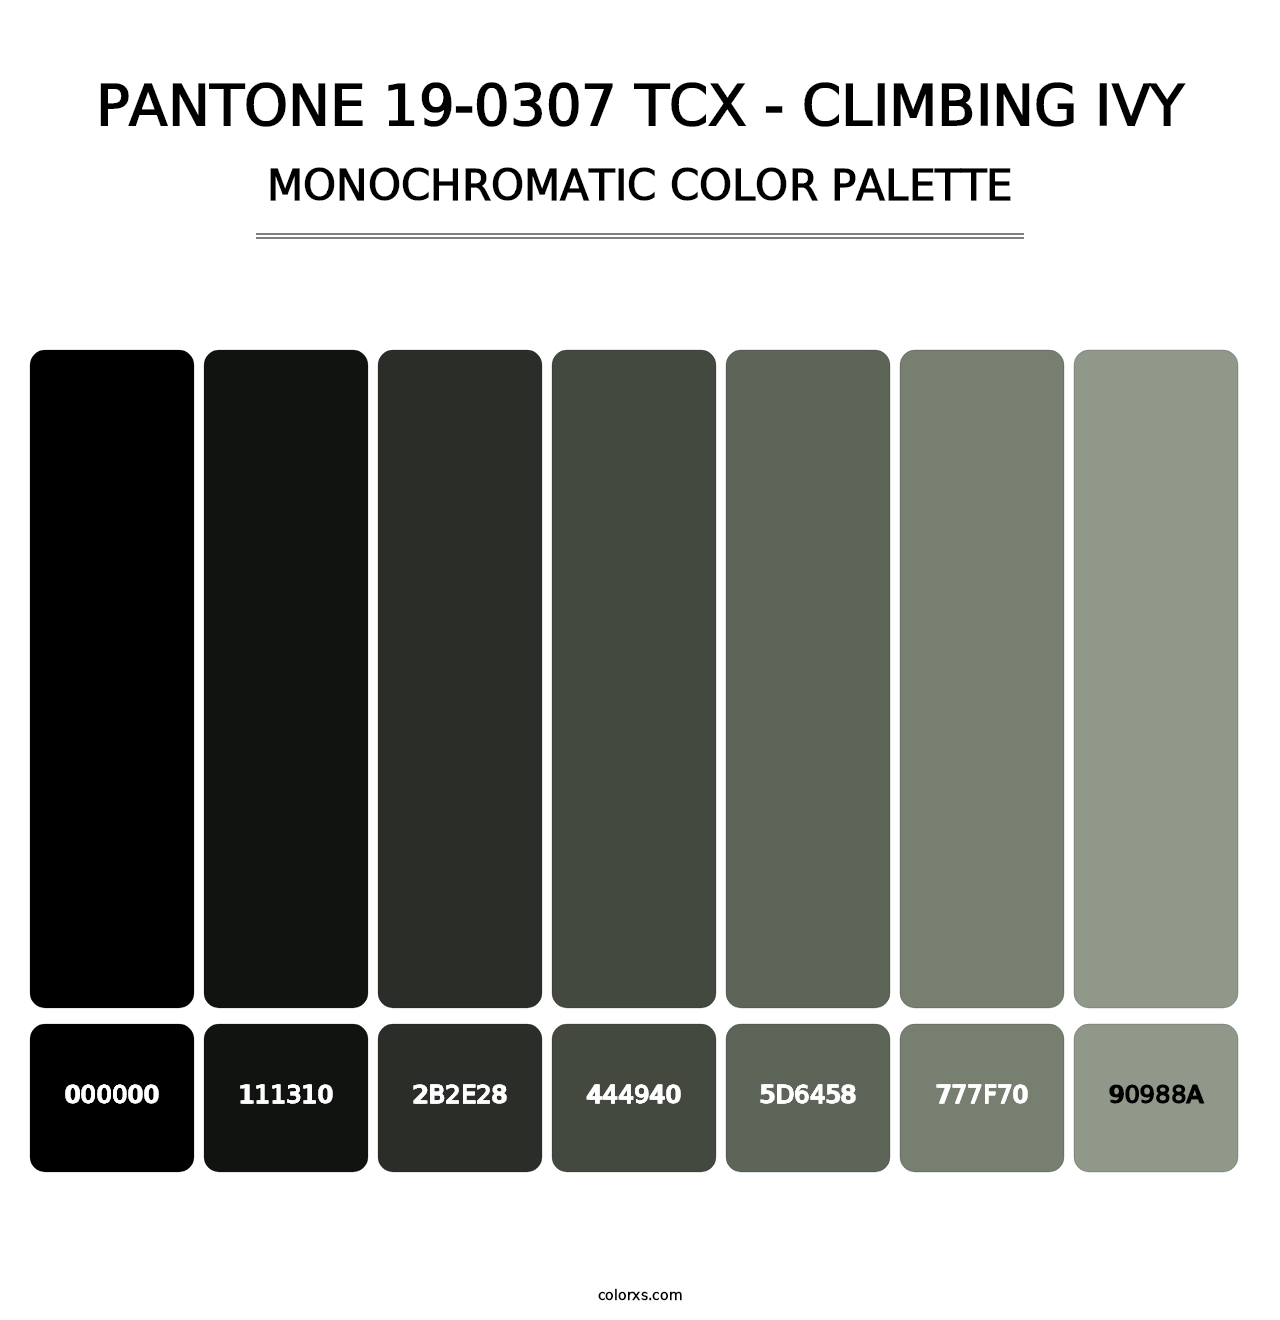 PANTONE 19-0307 TCX - Climbing Ivy - Monochromatic Color Palette